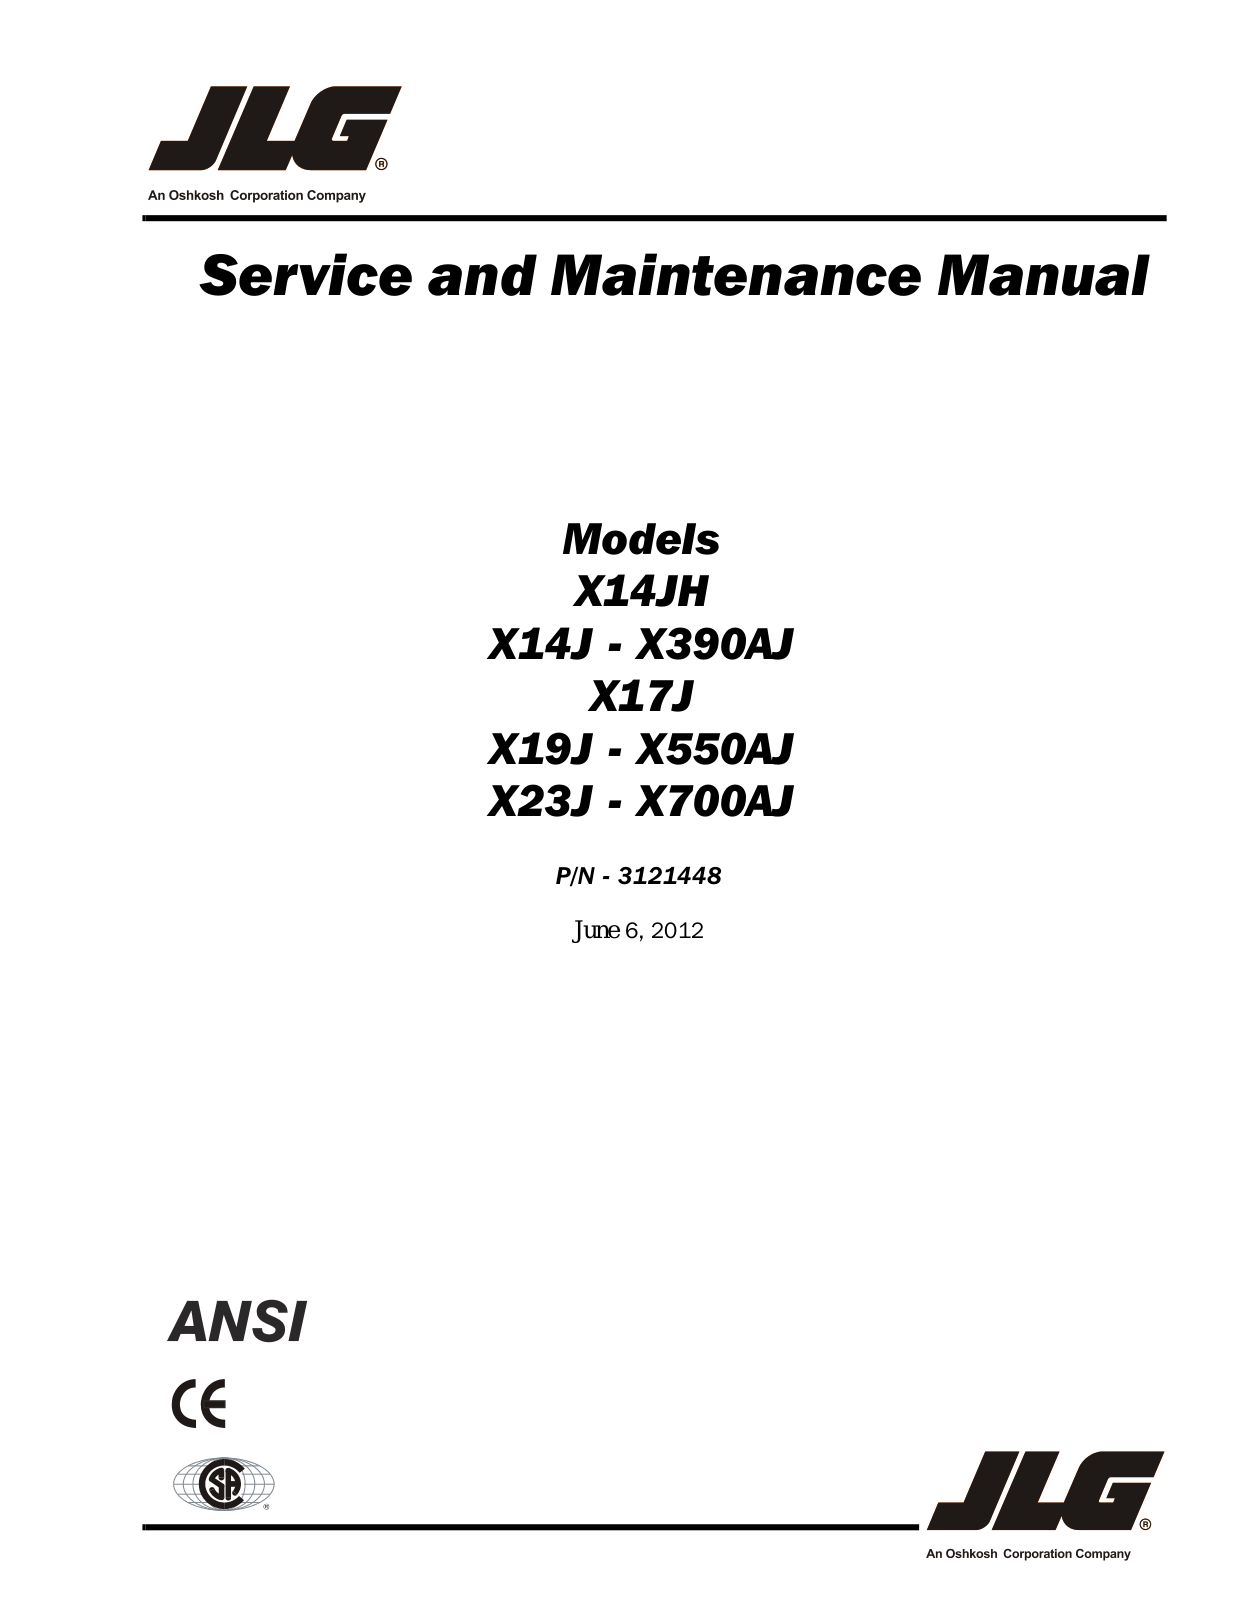 JLG X20JP, X600AJ Service Manual